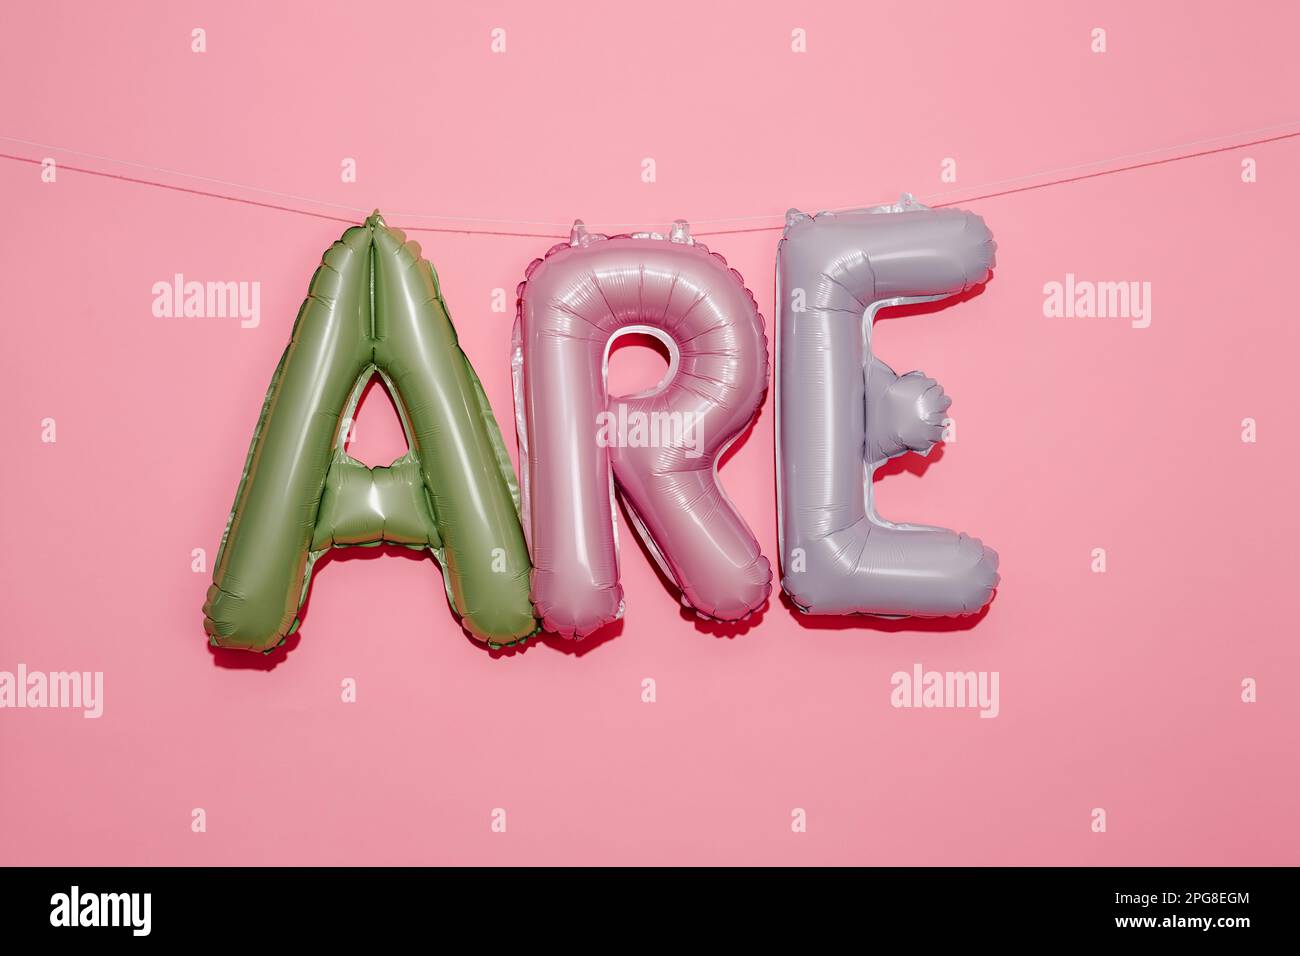 alphabetförmige Ballons in verschiedenen Farben, die den Text bilden, hängen an einer Schnur auf einem rosafarbenen Hintergrund mit einem leeren Bereich darüber Stockfoto